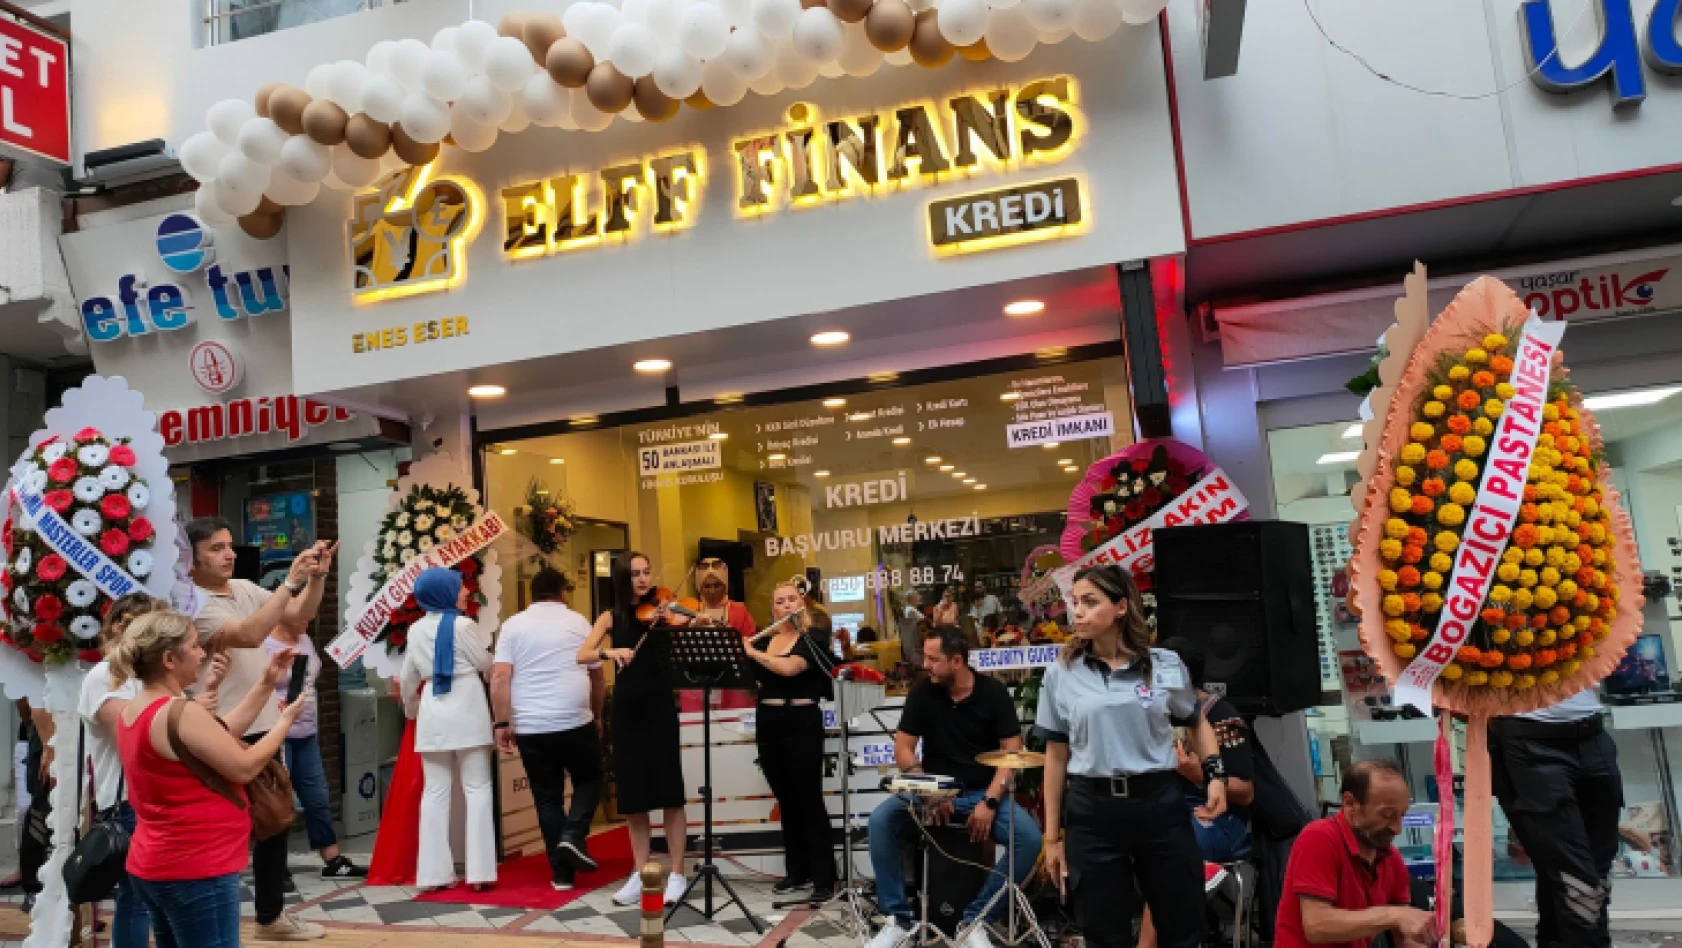 ELFF Finans ihtişamlı açılışını gerçekleştirdi!